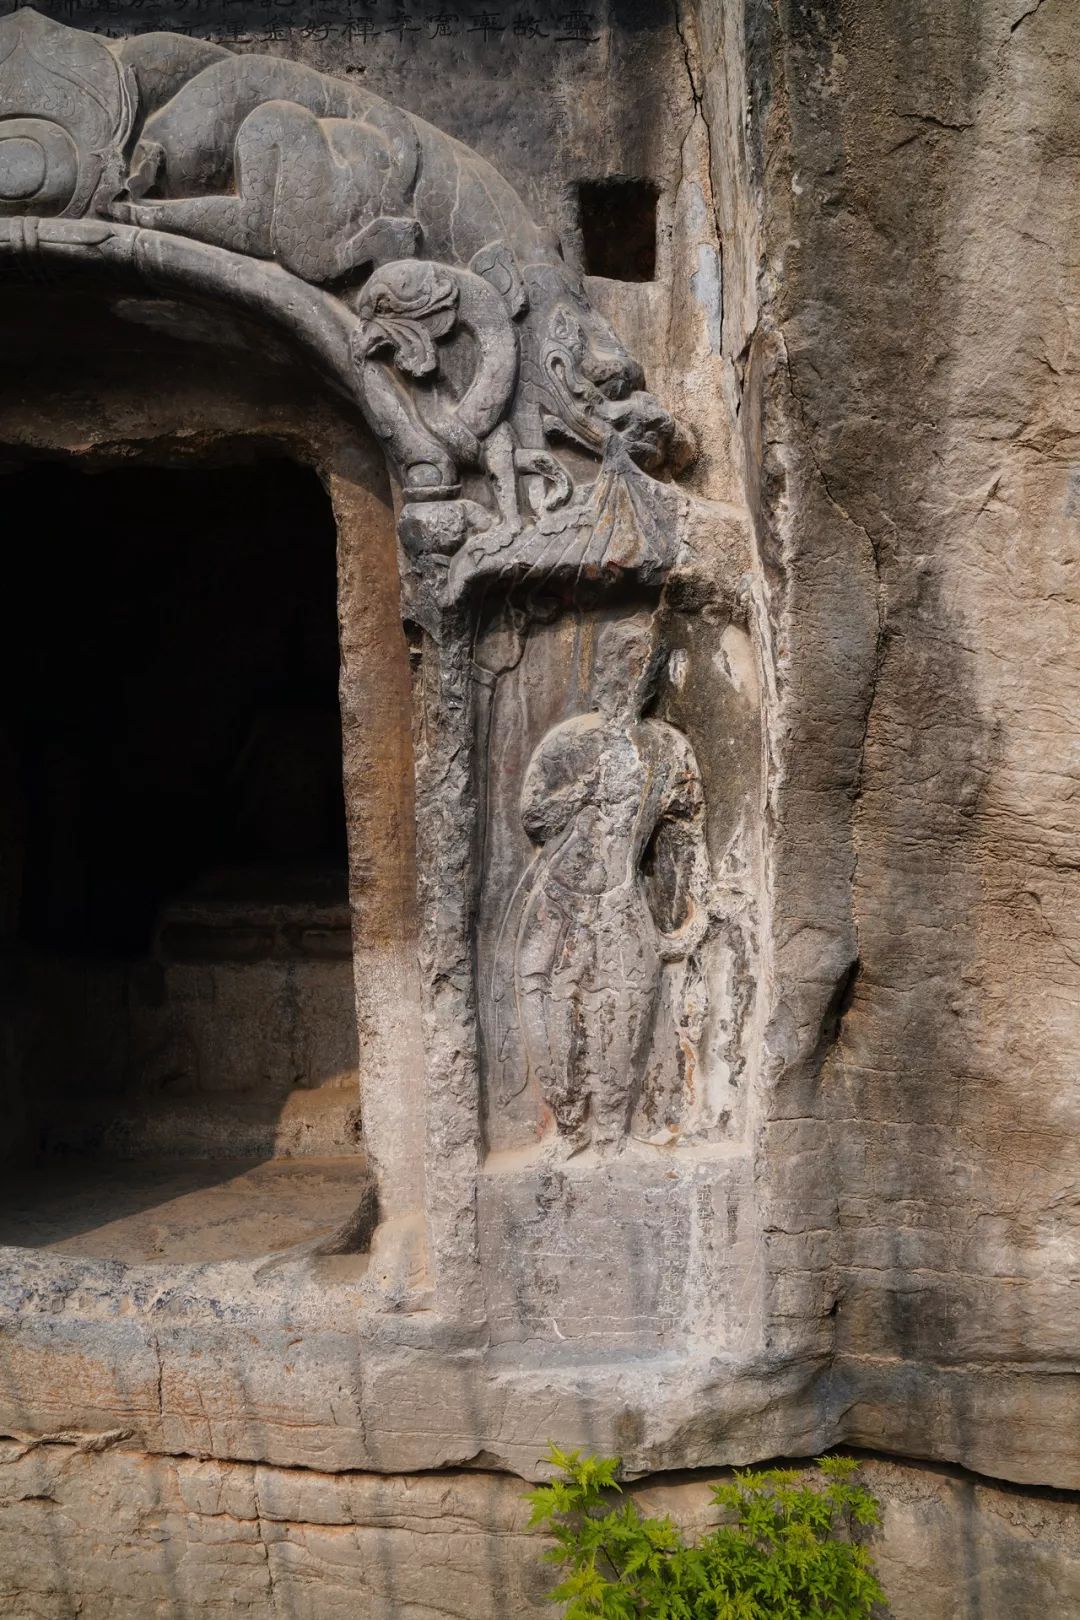 小南海石窟:集雕塑,佛经和经变石刻于一身